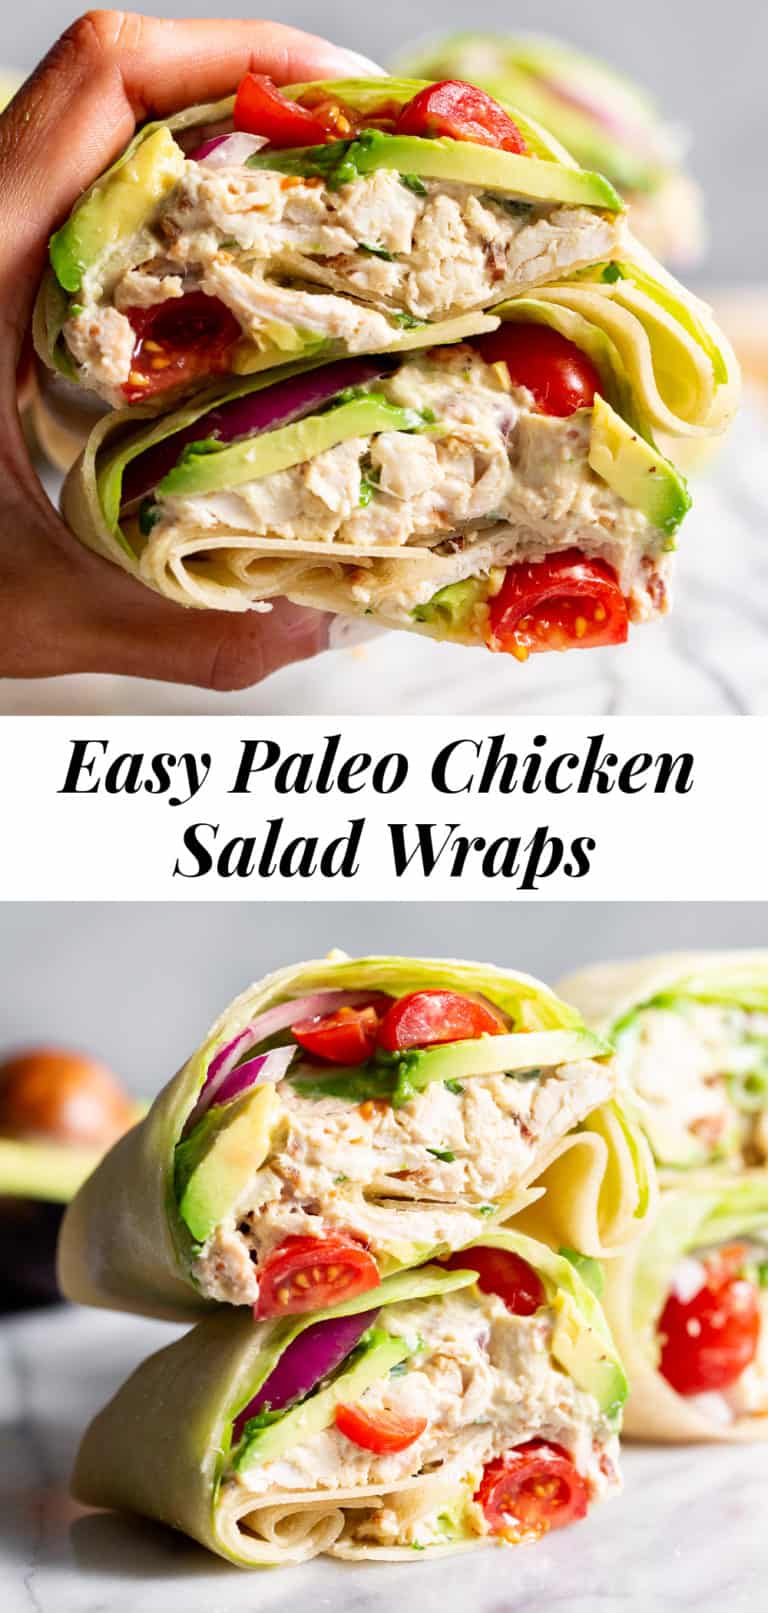 Paleo Chicken Salad Wraps {Grain Free, Dairy Free}